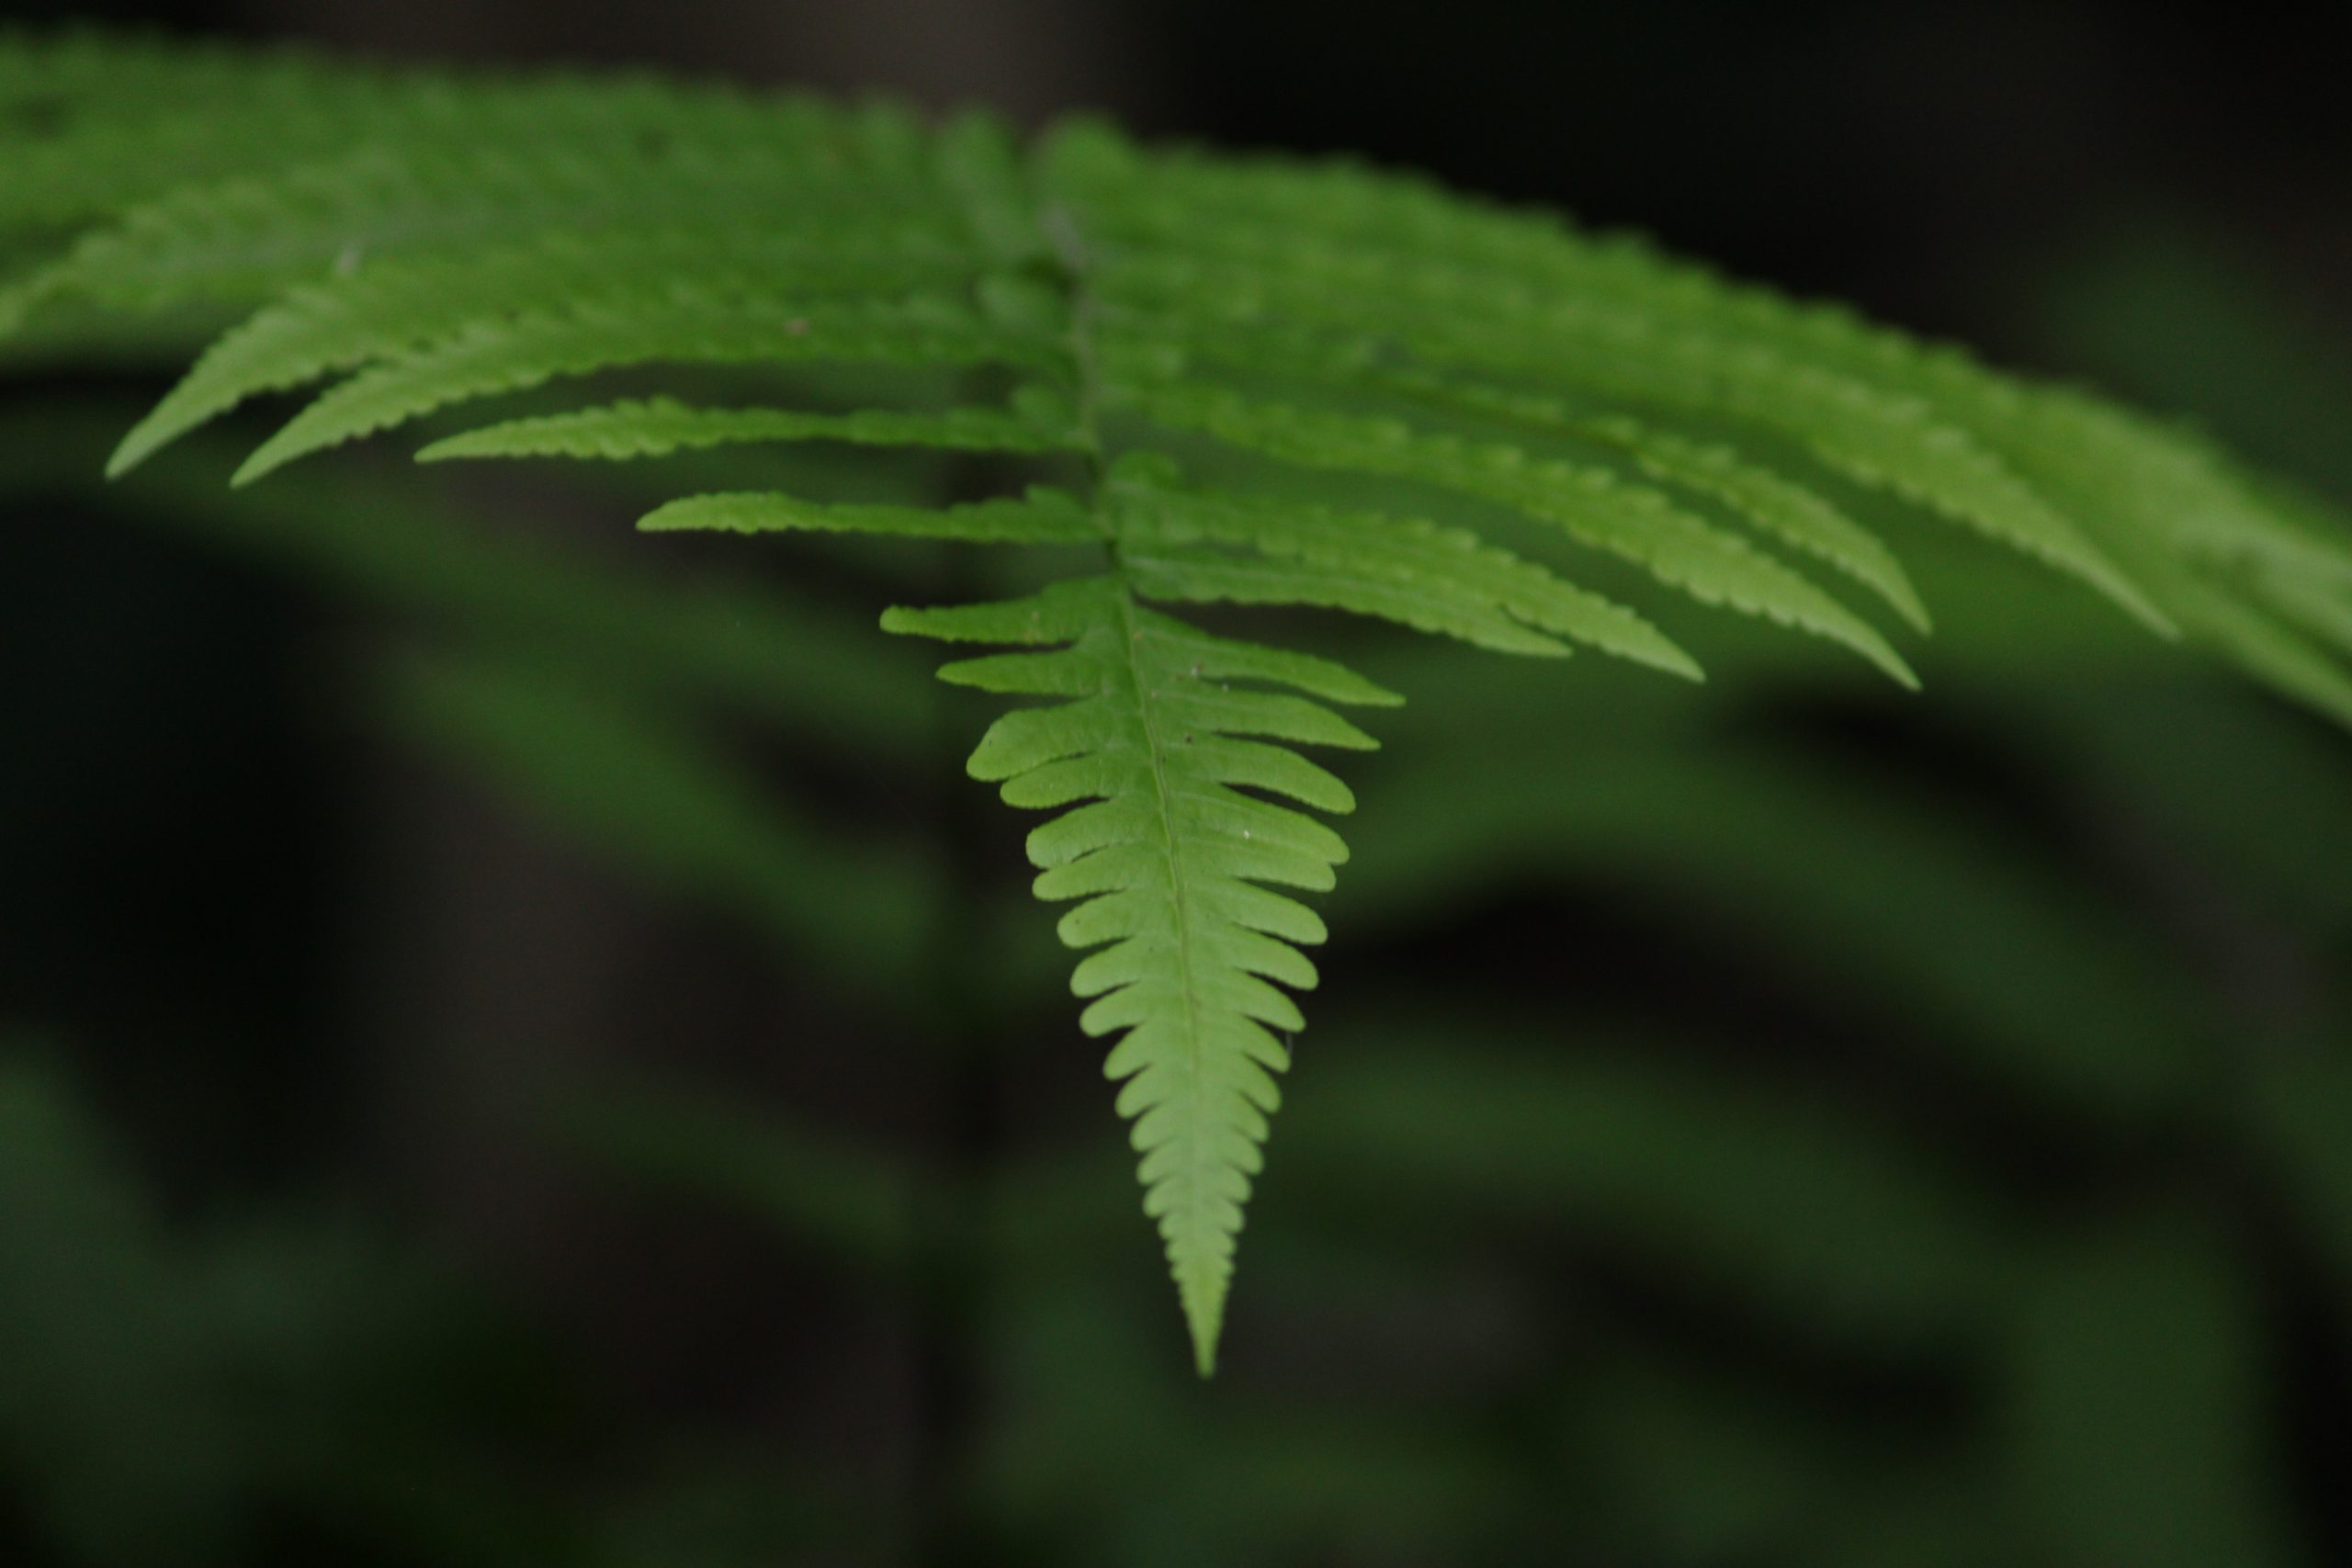 A beautiful fern leaf